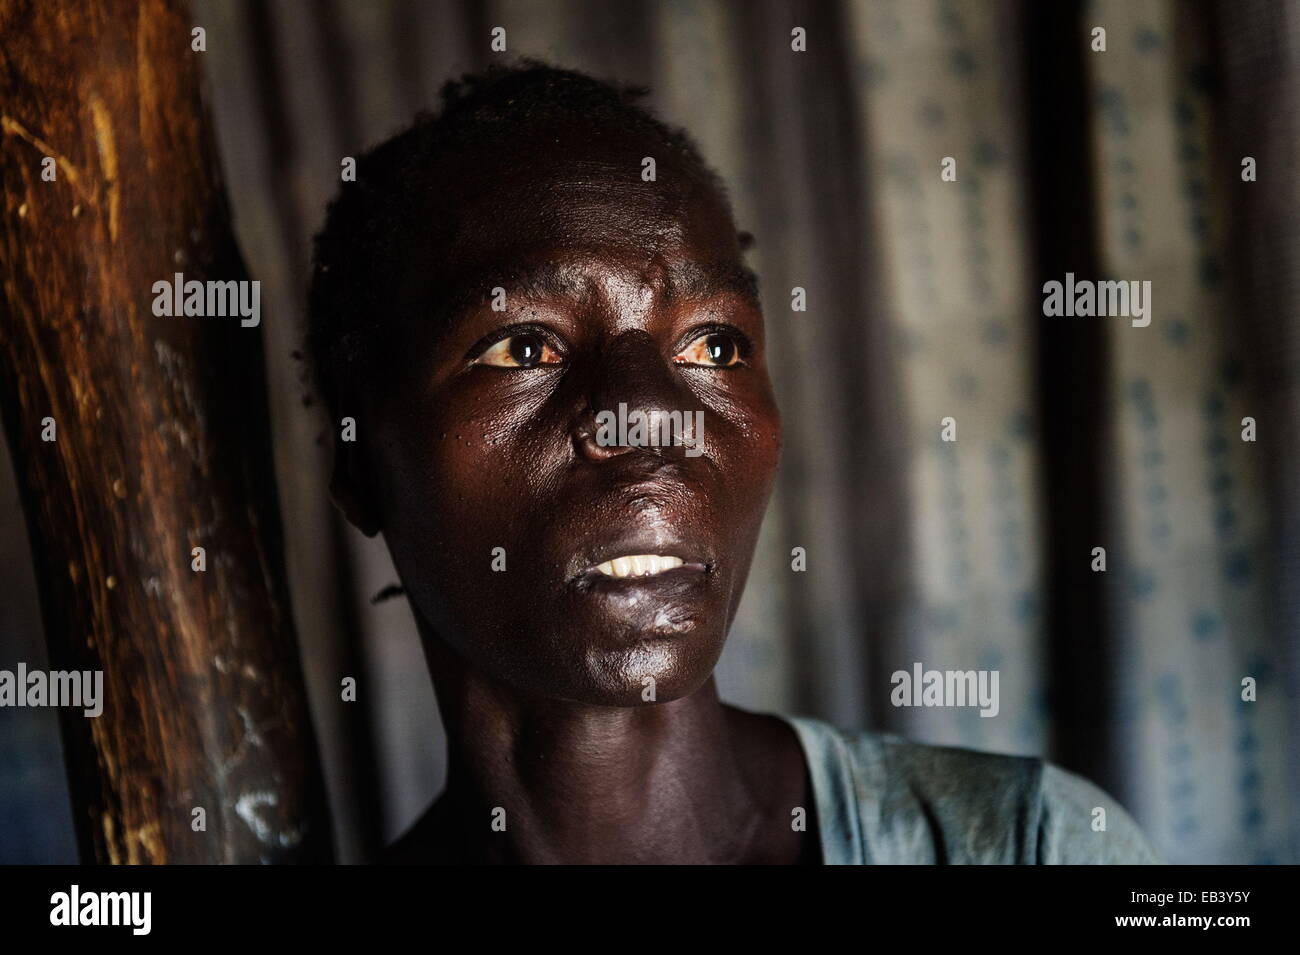 Mar 16, 2014 - Gulu, in Uganda - MARGRET età 32 con 5 bambini. Suo marito è morto nel 2011. Lei ottiene il trattamento attraverso una ONG. In 2005, 8 mese di gravidanza Margret, co-moglie e i loro vicini durante lo scavo sono stati rapiti dai ribelli dell LRA e prese nella boccola, uccidendo uno da uno. È sopravvissuta a causa della premonizione timori dei ribelli su ciò che accadrà loro mogli incinta se uccidono il suo. Dal 1987-2006 migliaia sono stati brutalmente uccisi, i membri della famiglia sono stati persi e fuori posto. Dignità e speranza nel nord Uganda è stato cancellato a causa della guerra infinita tra l LRA aka l Esercito di Resistenza del Signore o Foto Stock